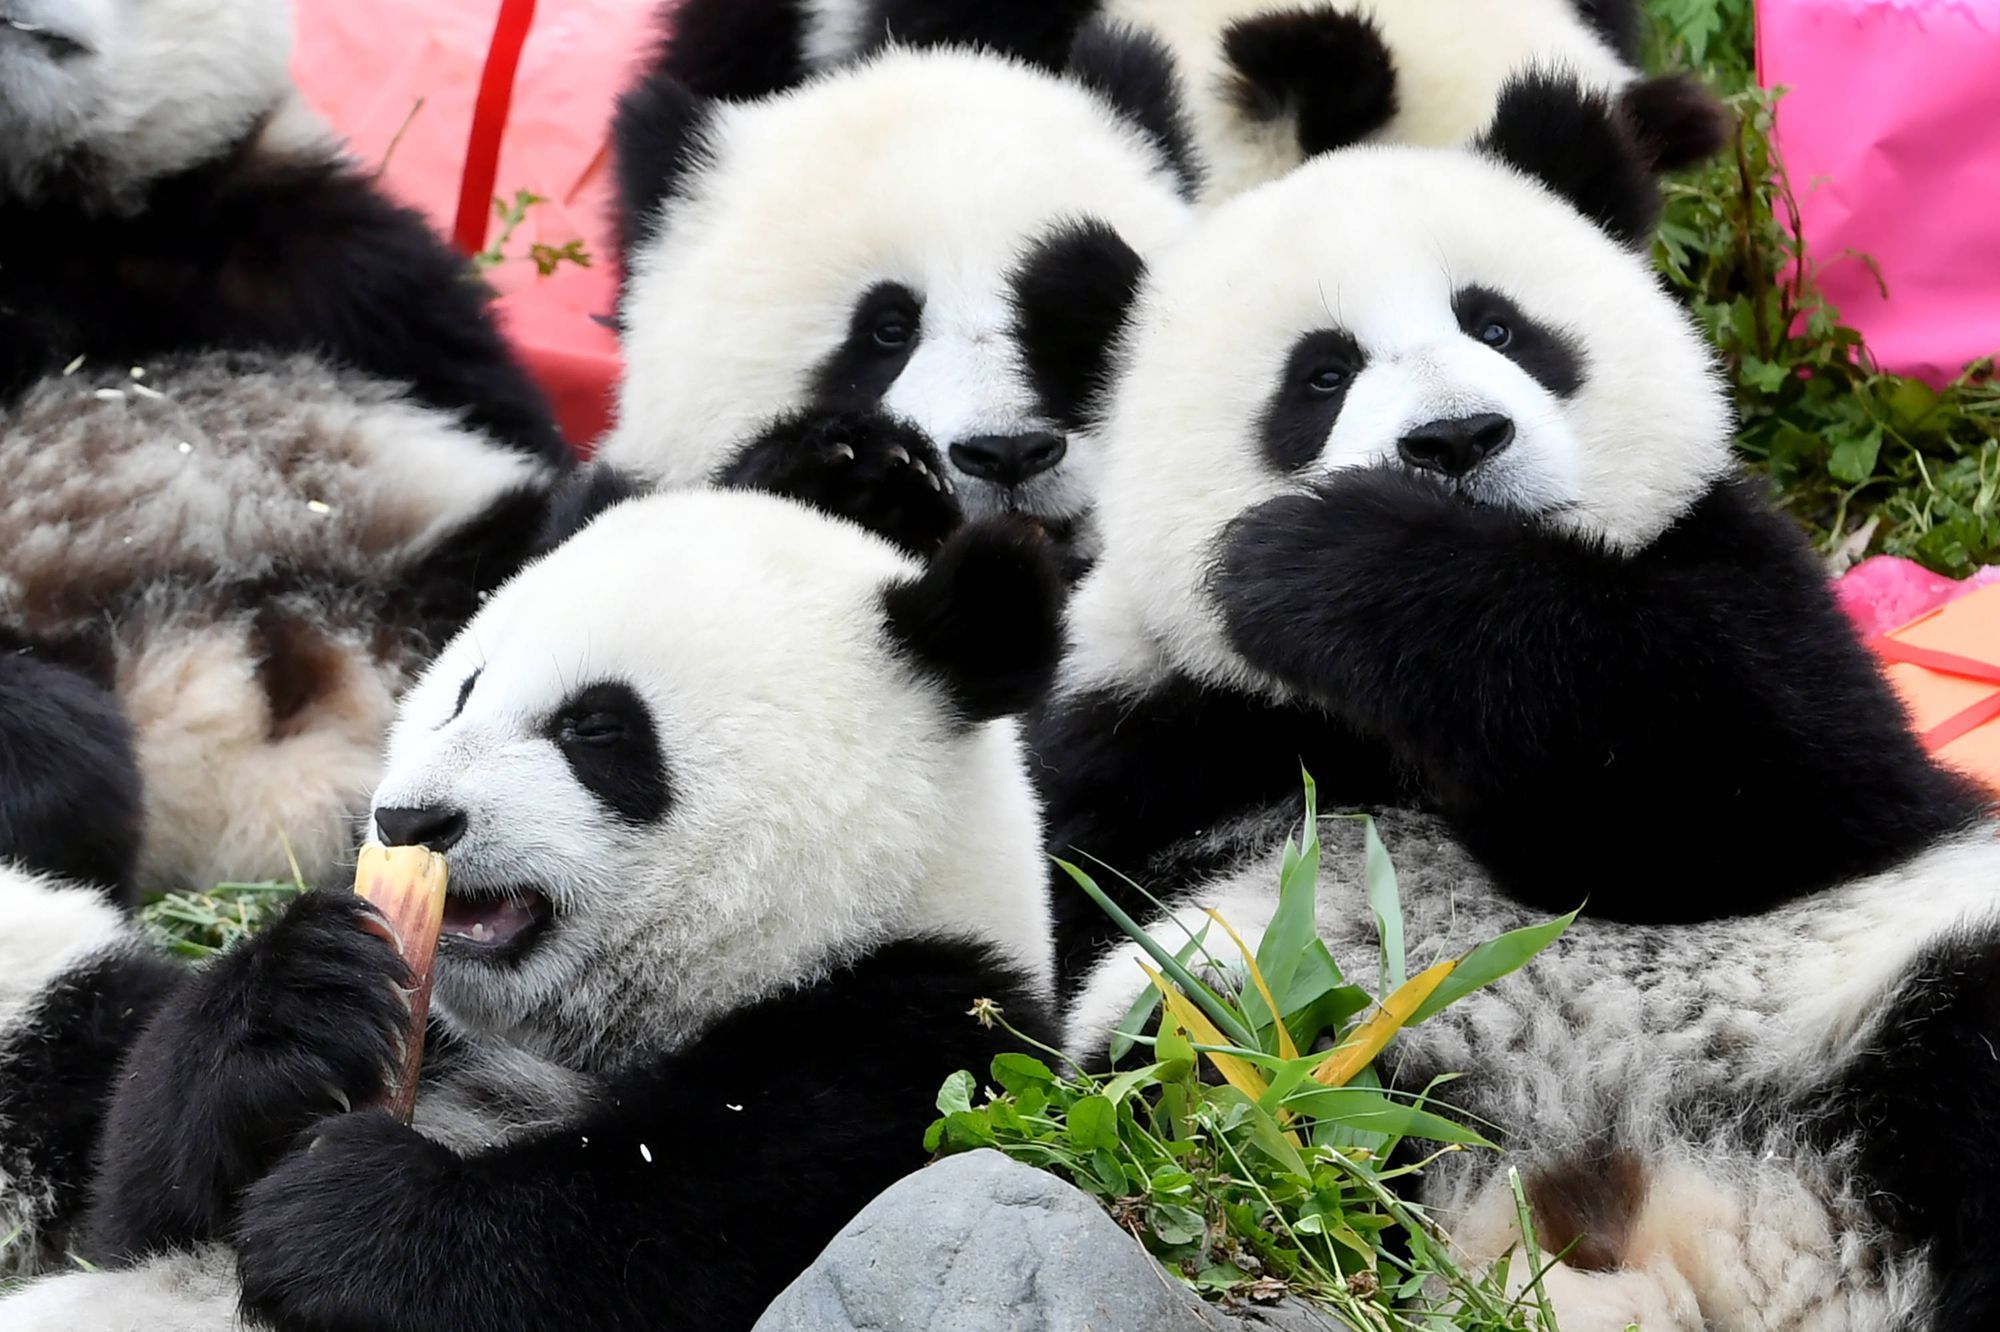 Le Joyeux Anniversaire Des Pandas En Chine